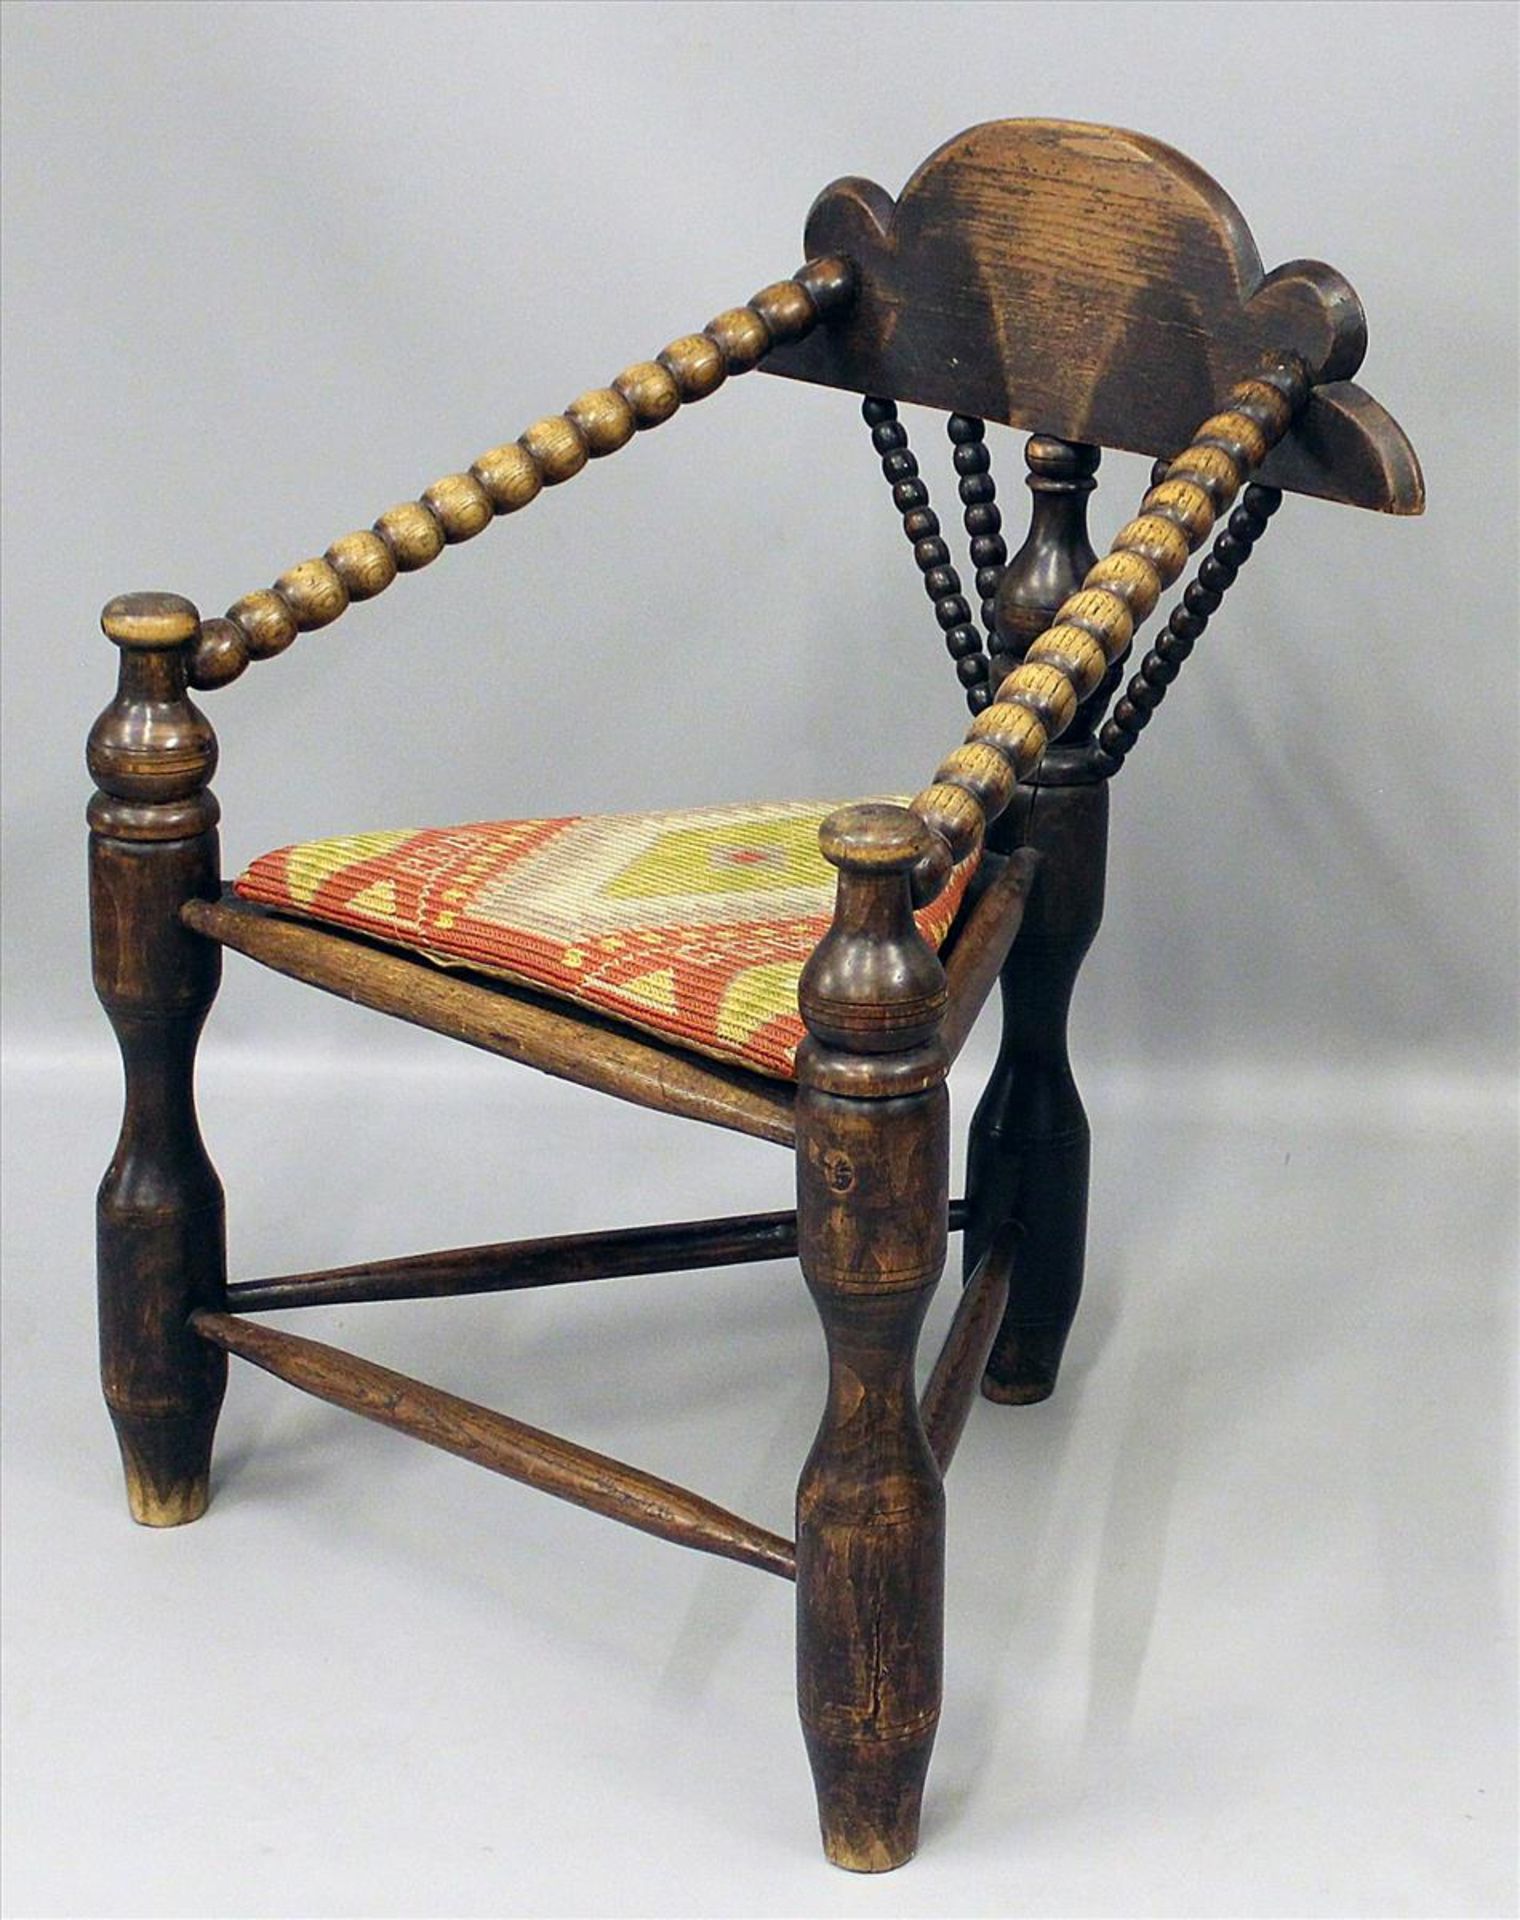 Stuhl.Eiche. 3-eckiges Sitzbrett auf 3 massiven, gedrechselten Beinen mit Verstrebung. Durchbrochene